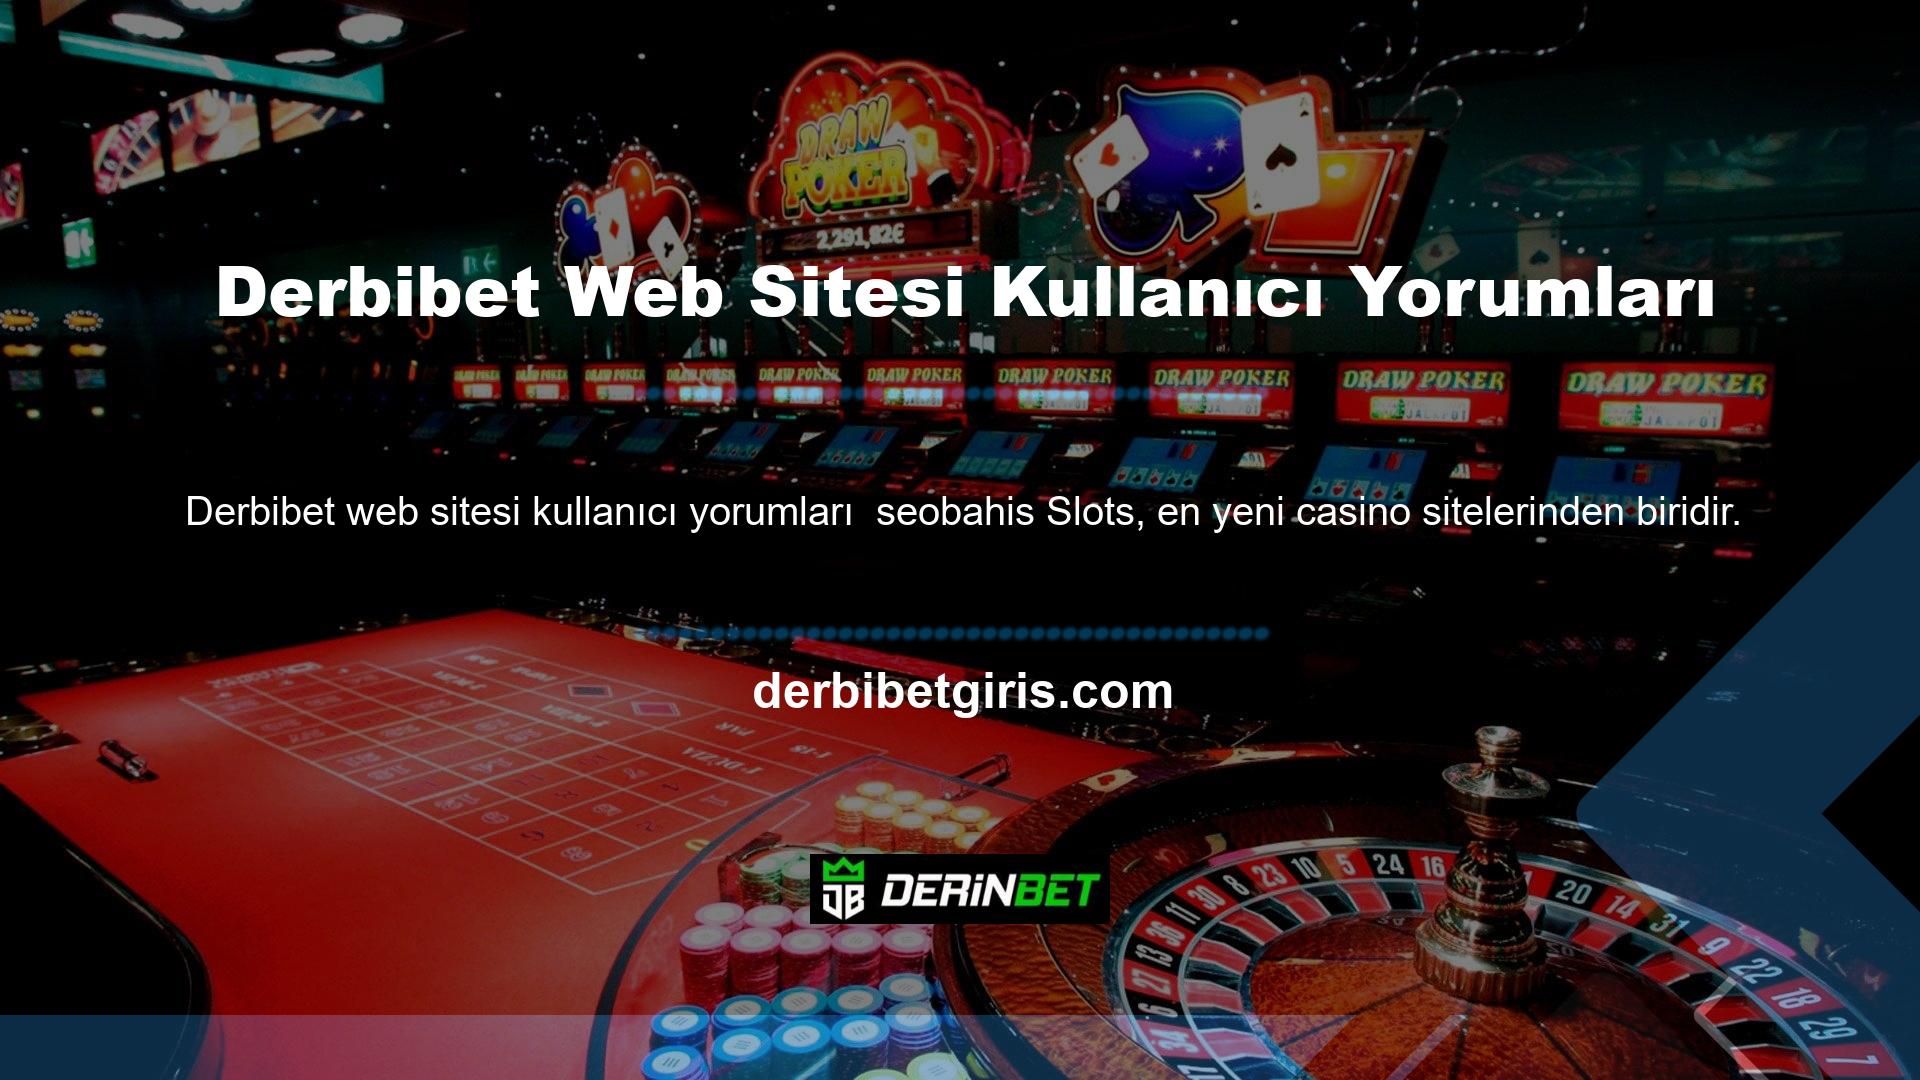 Site hem casino hem de casino hizmetleri sunmaktadır